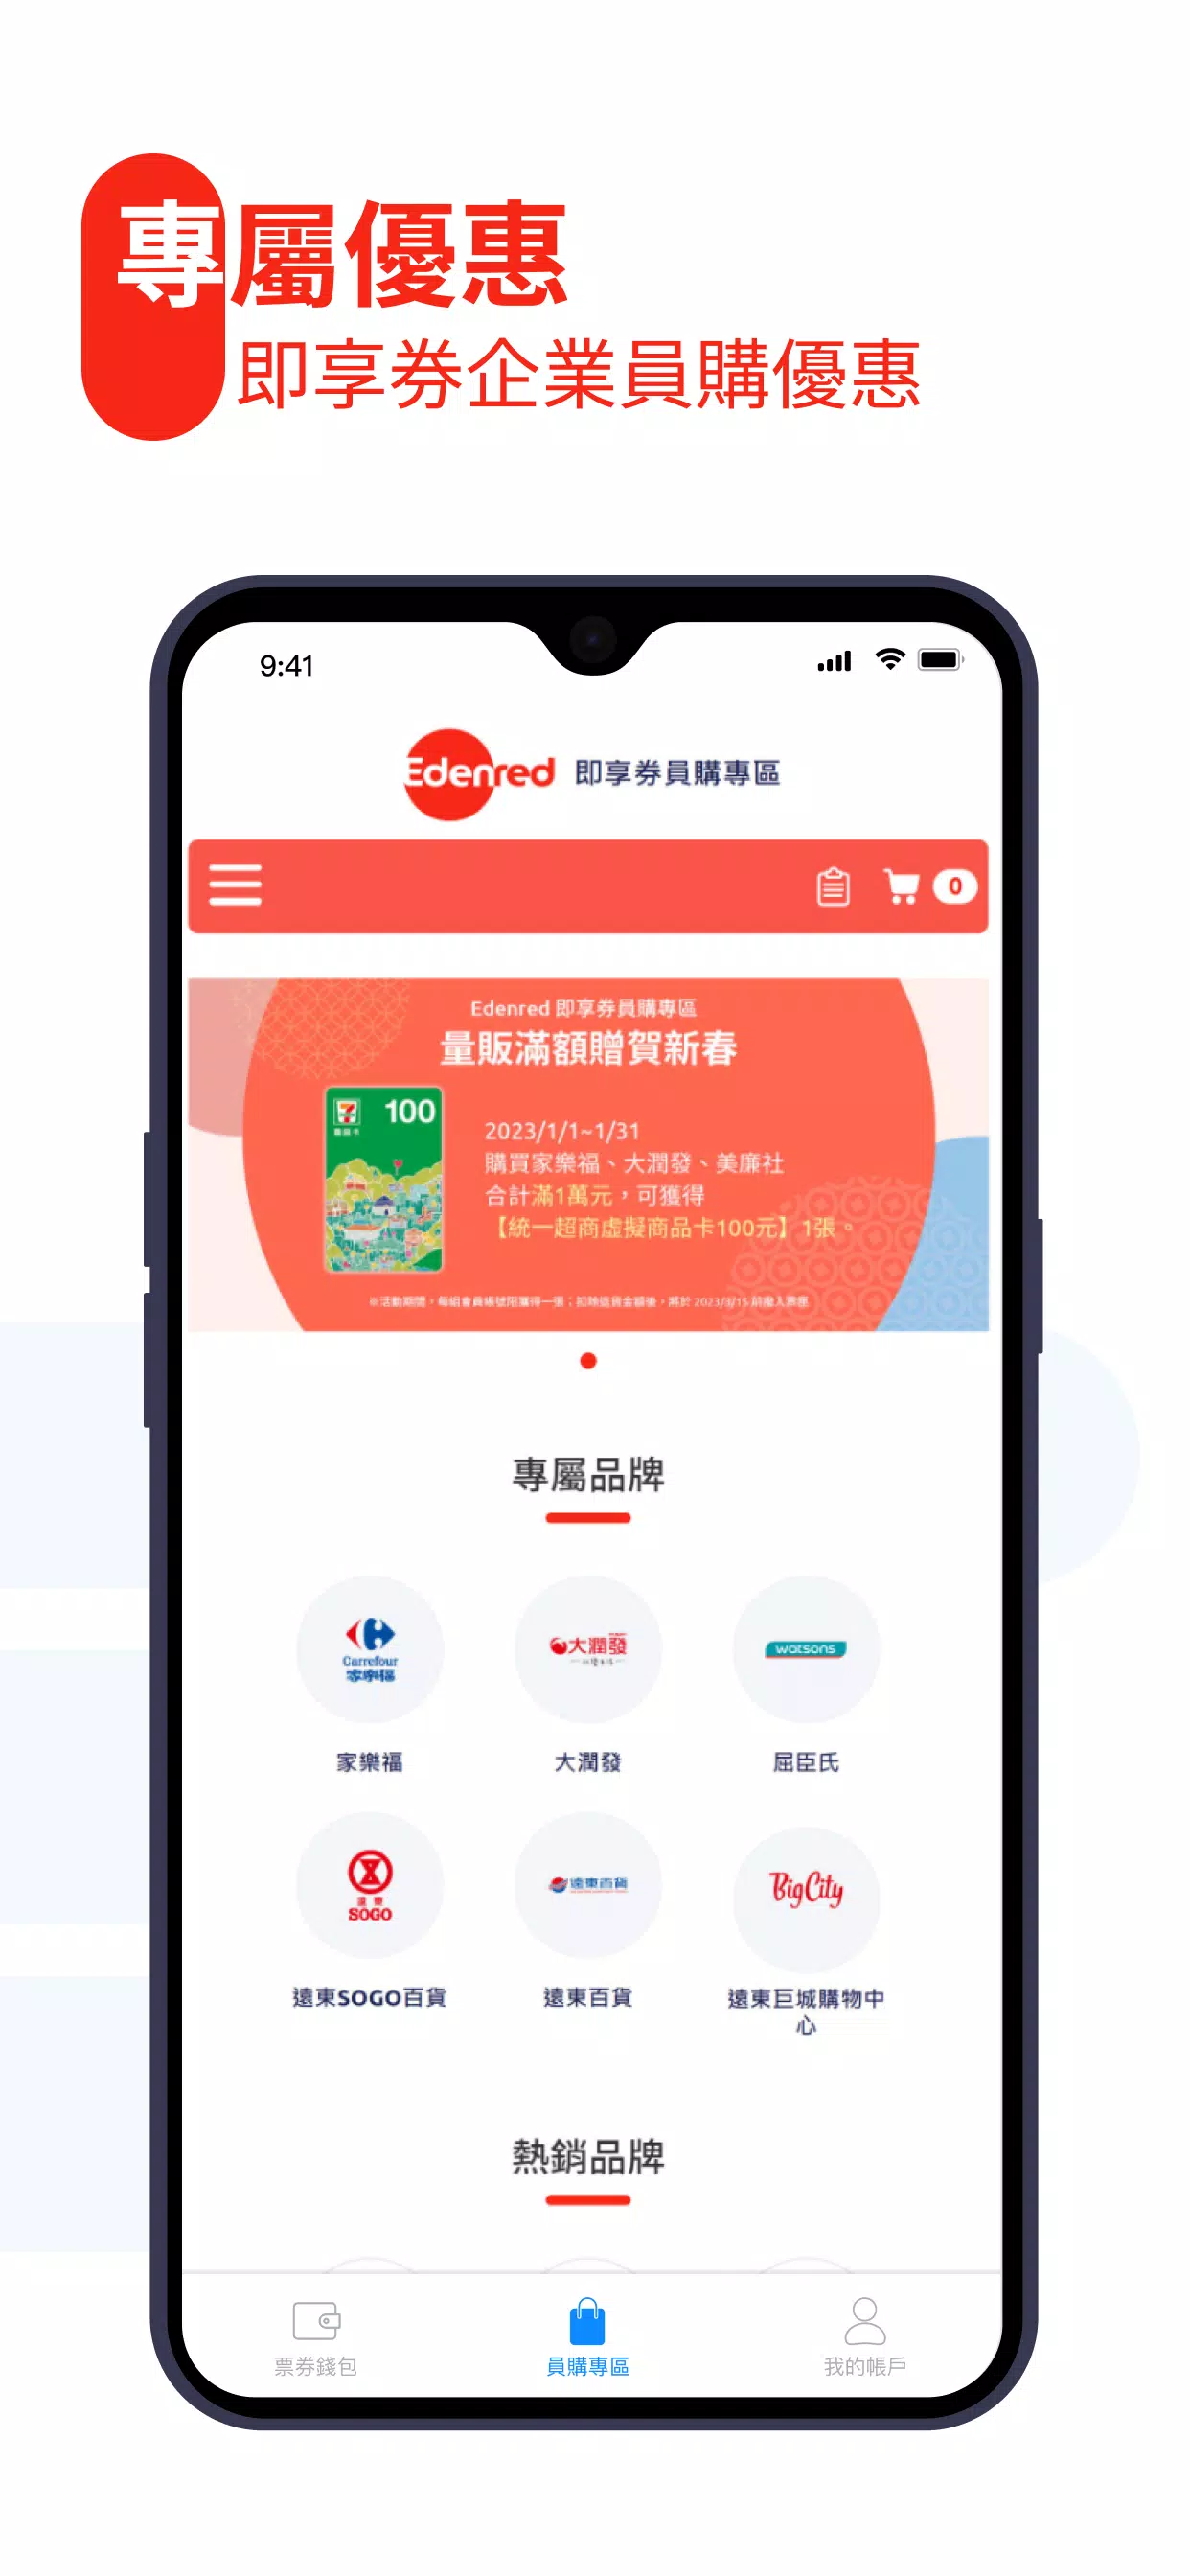 Edenred Taiwan APK für Android herunterladen